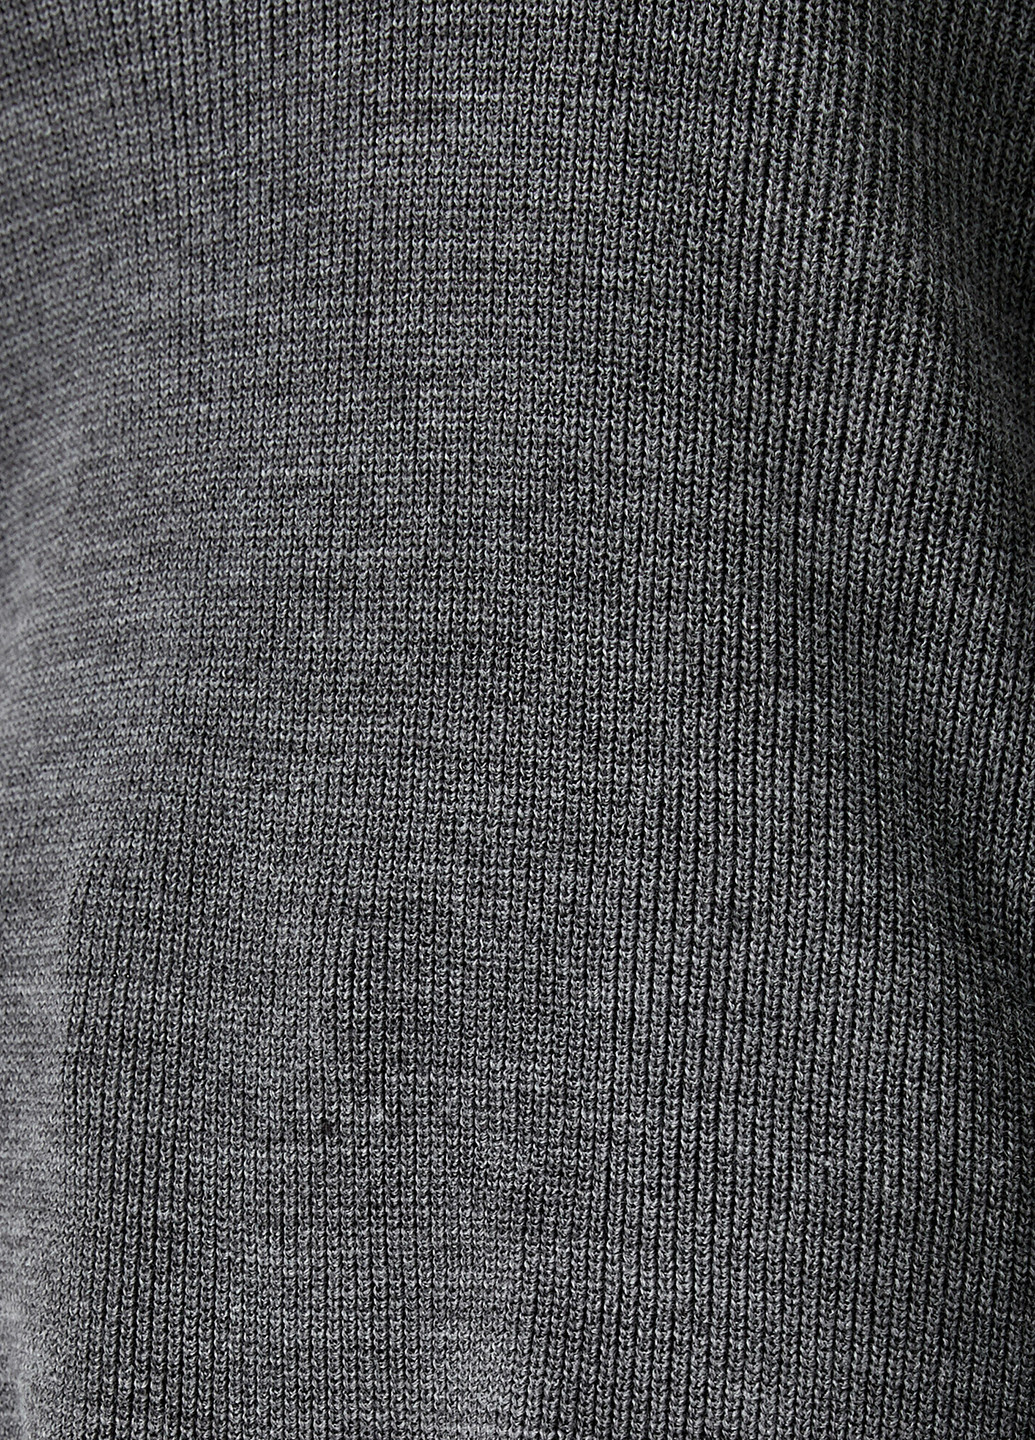 Темно-сірий демісезонний пуловер пуловер KOTON